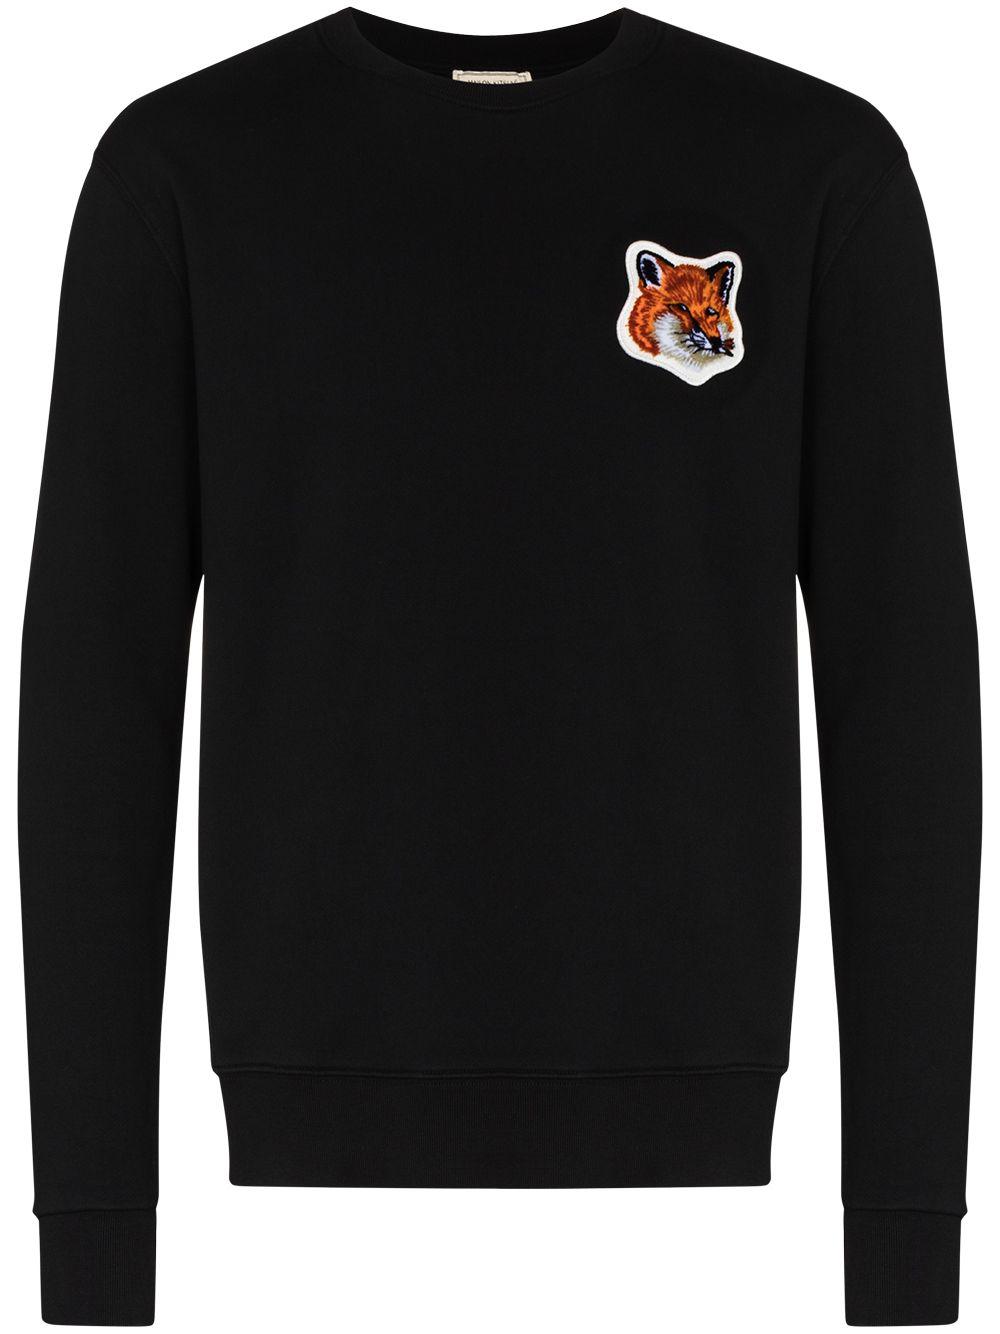 Maison Kitsuné Velvet Fox Head Cotton Sweatshirt in Black for Men - Lyst